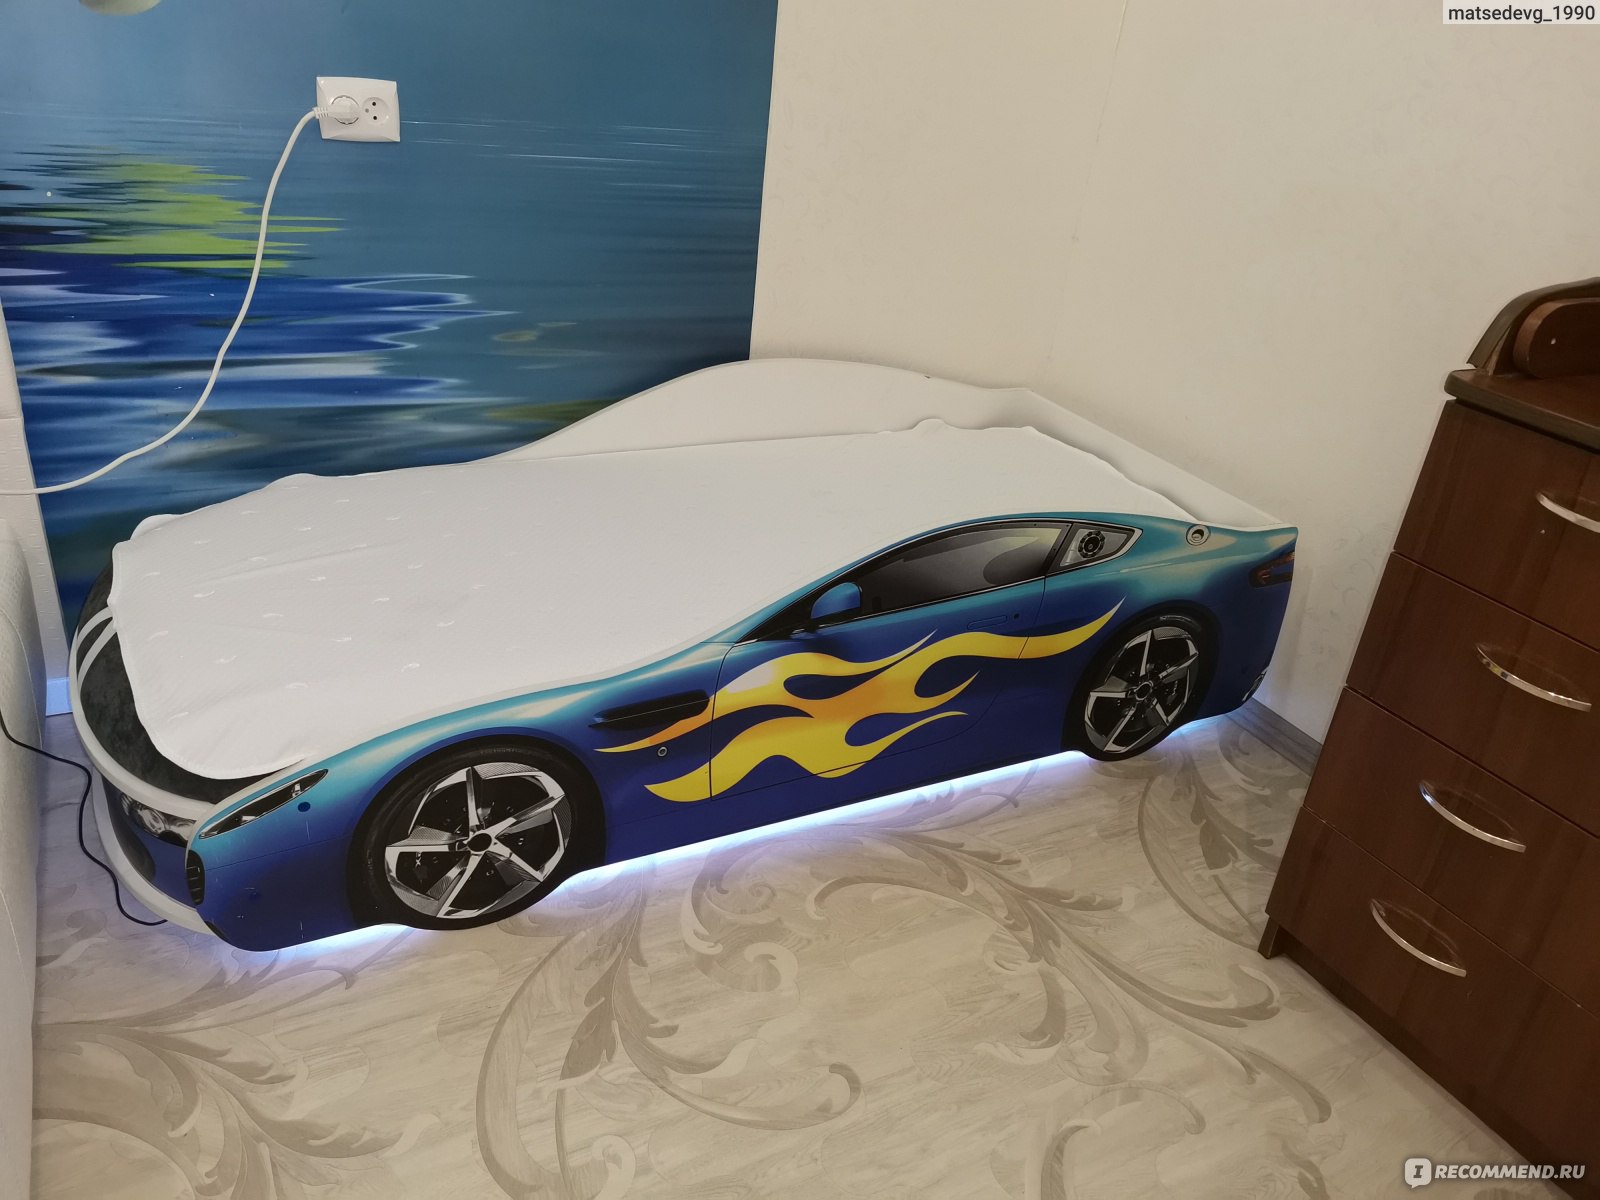 Постельное белье на детскую кровать машину